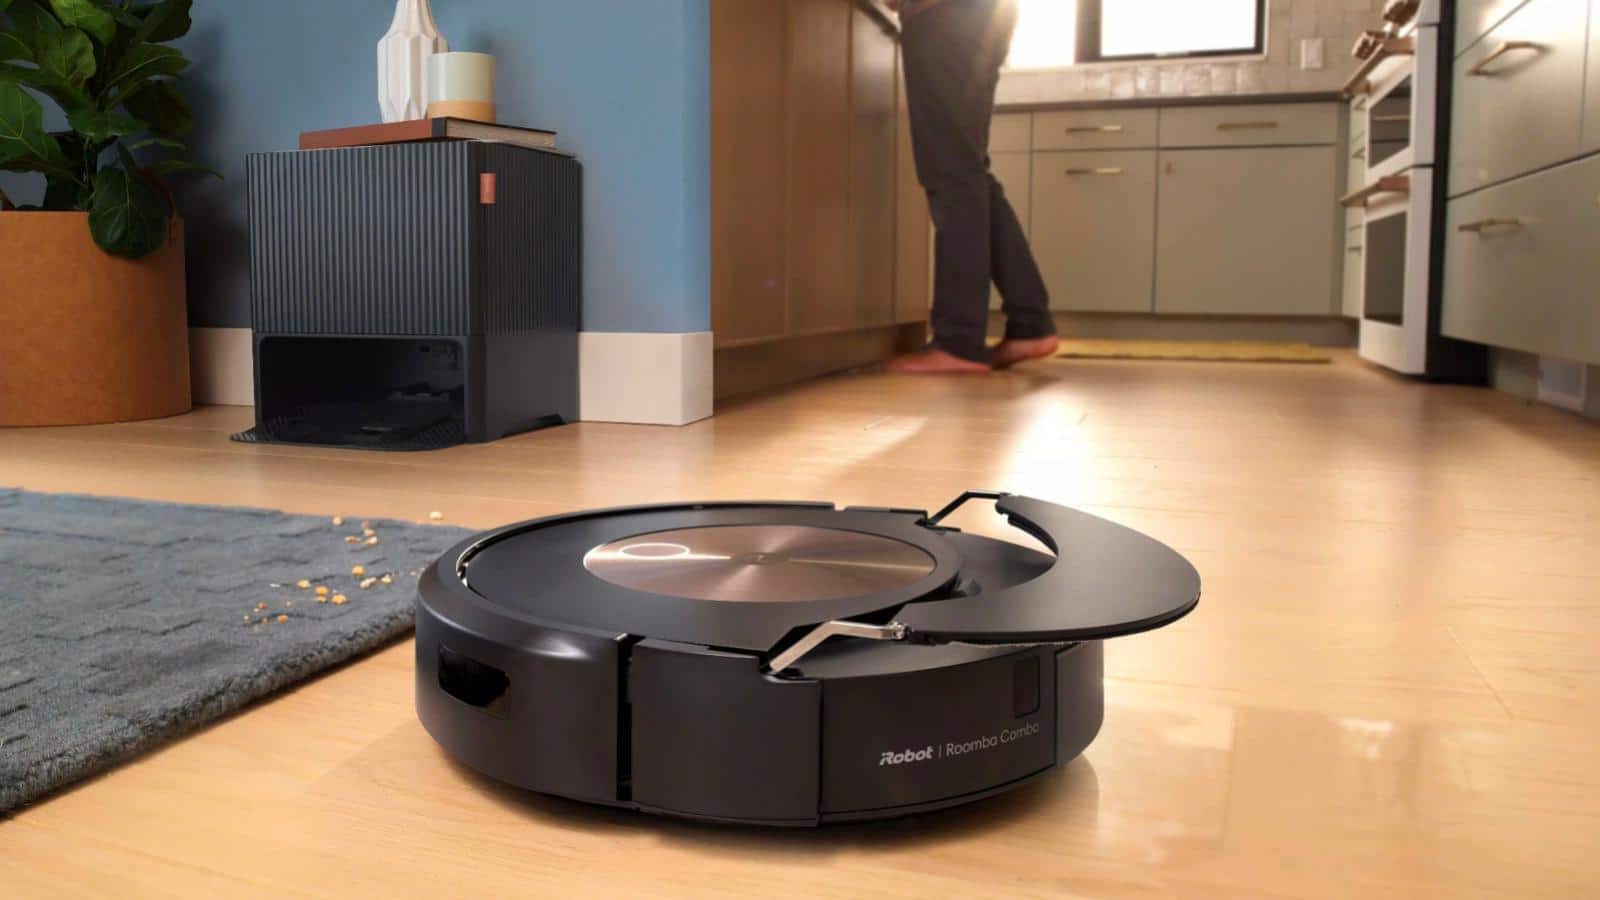 Voici où trouver cet aspirateur laveur robot iRobot Roomba au